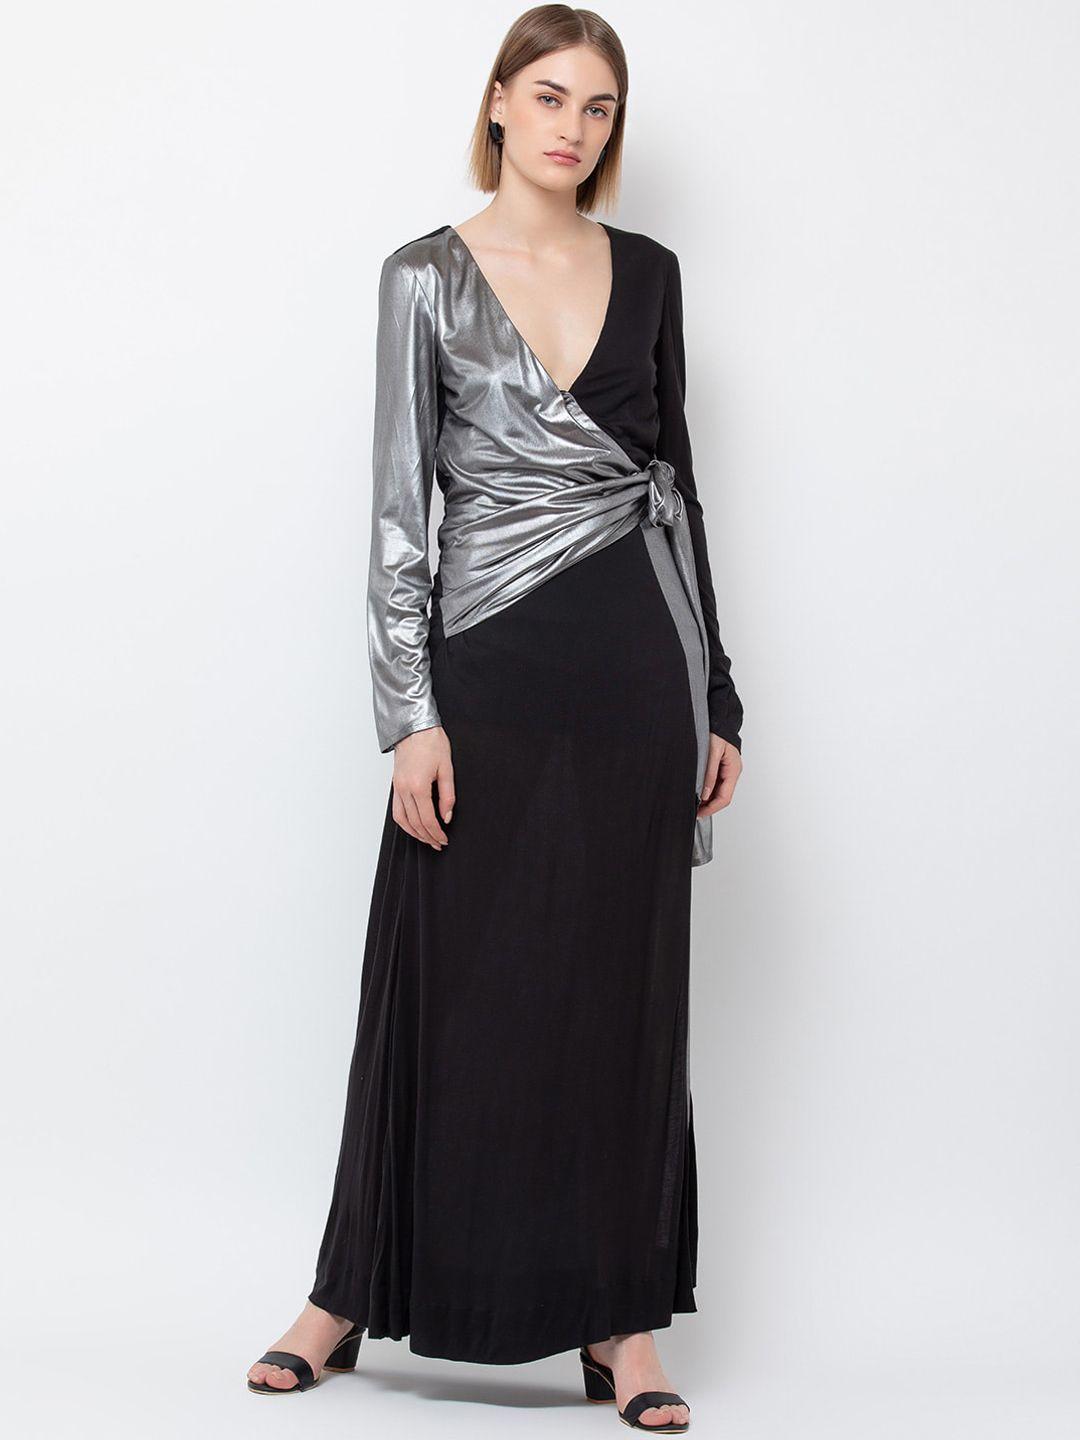 dodo & moa women black & silver-toned colourblocked v-neck maxi dress